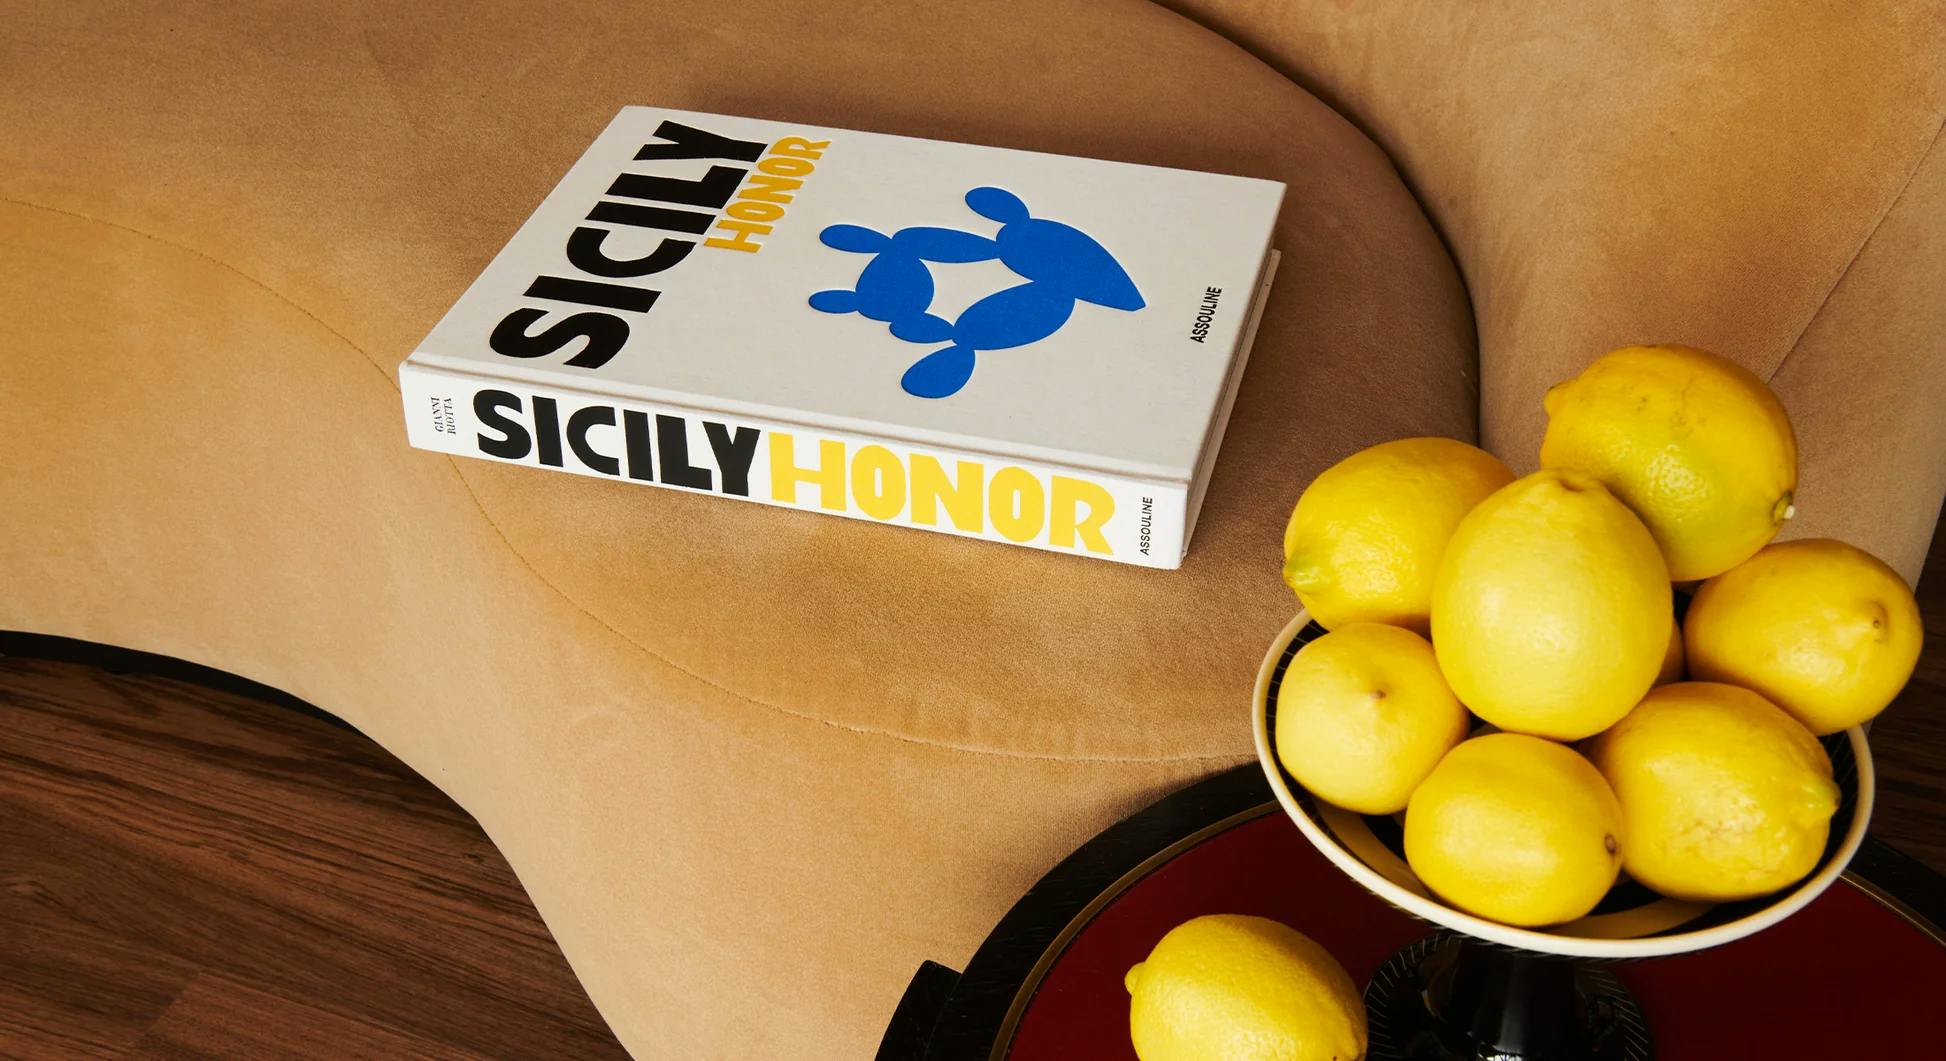 beau livre "sicily honor" sur un canapé, citrons en premier plan